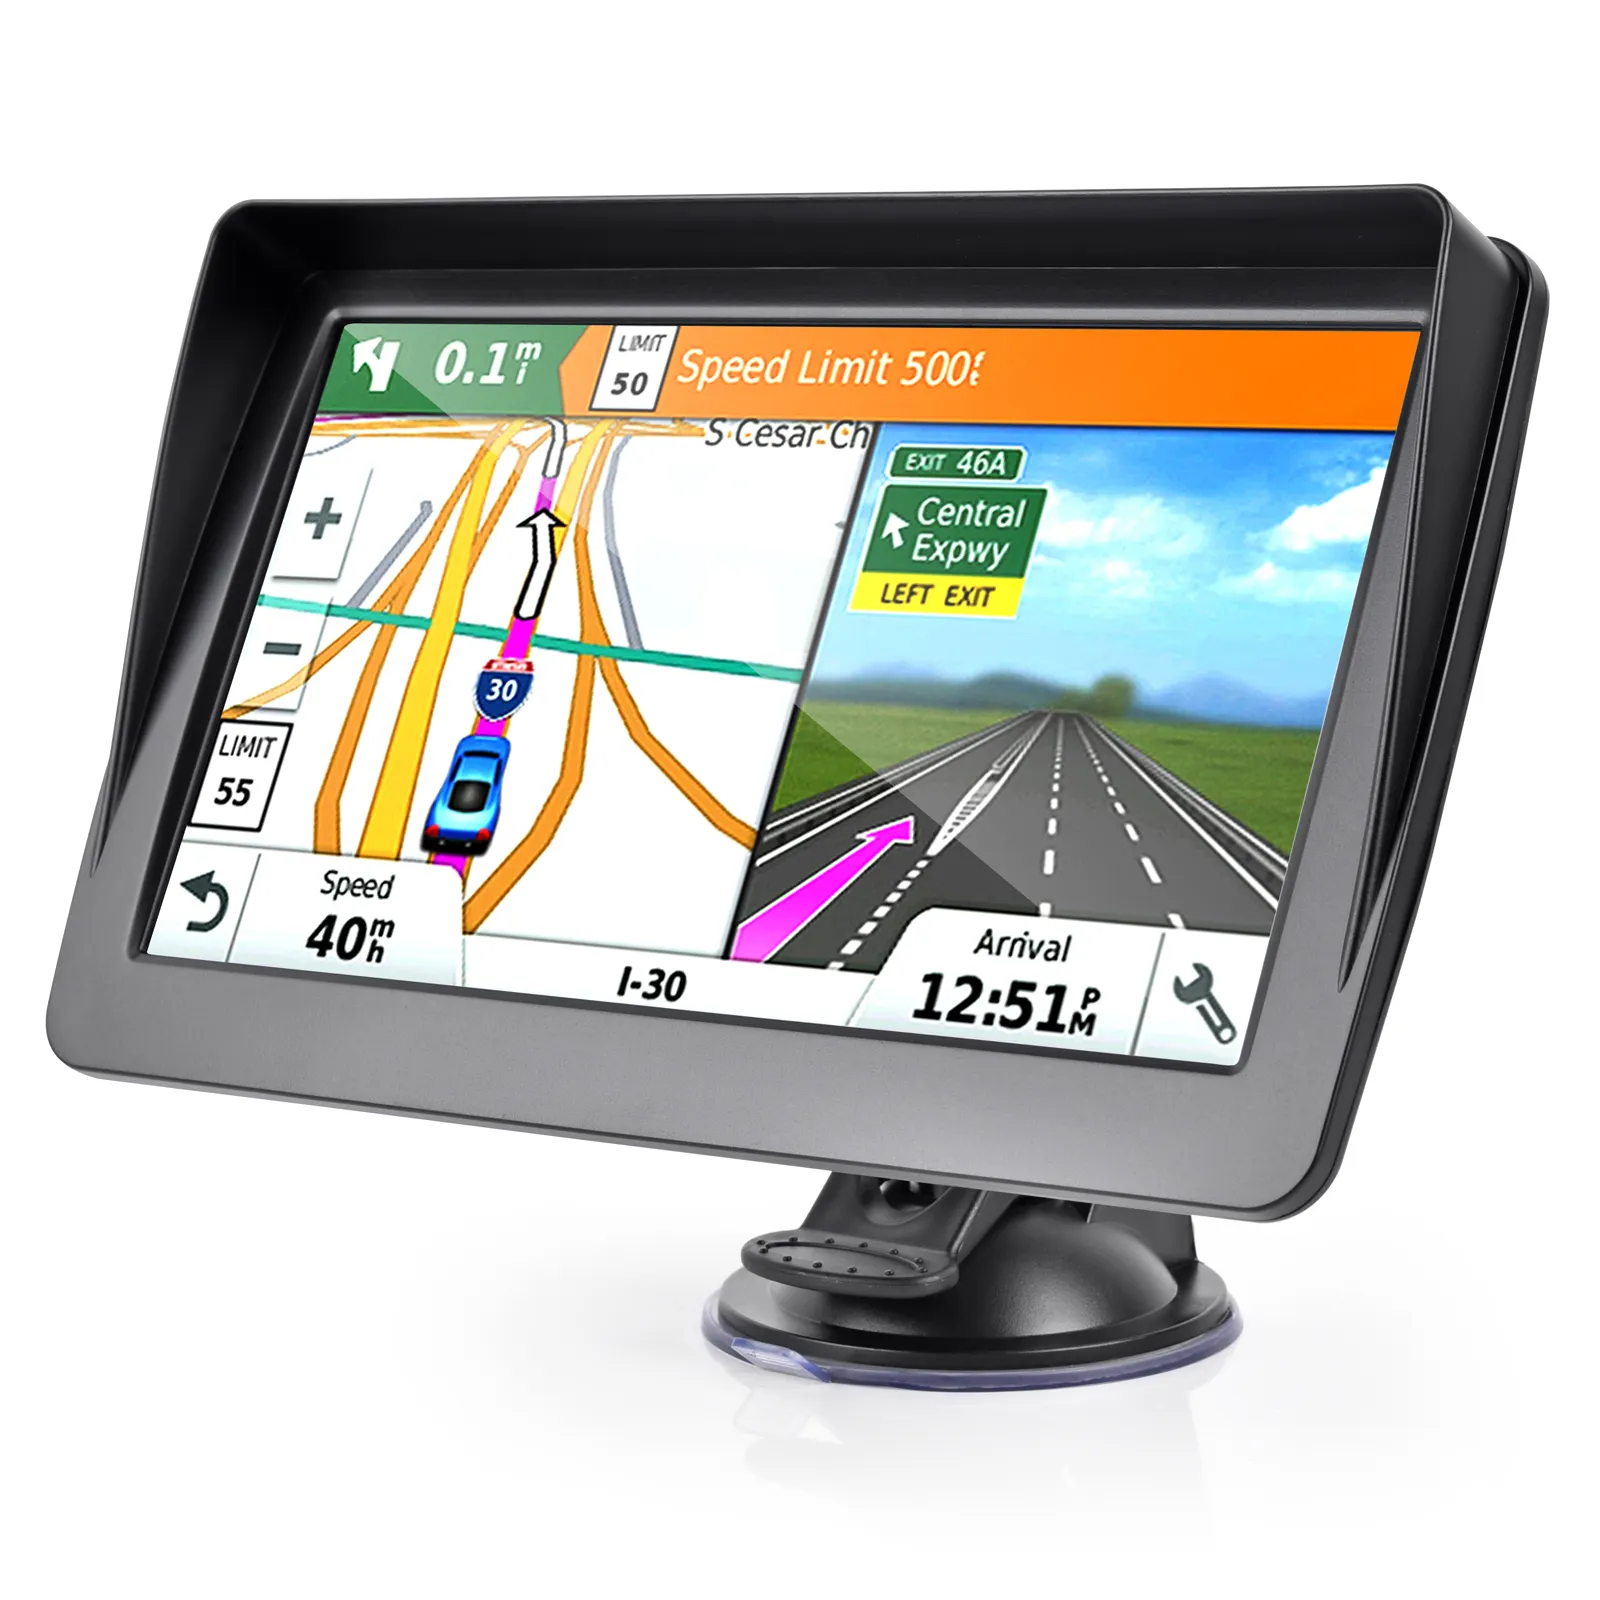 Reproductor de coche con pantalla táctil de 7 pulgadas, navegación GPS para coche con mapas gratuitos Wince 6,0, navegación GPS para camión, navegador GPS para coche